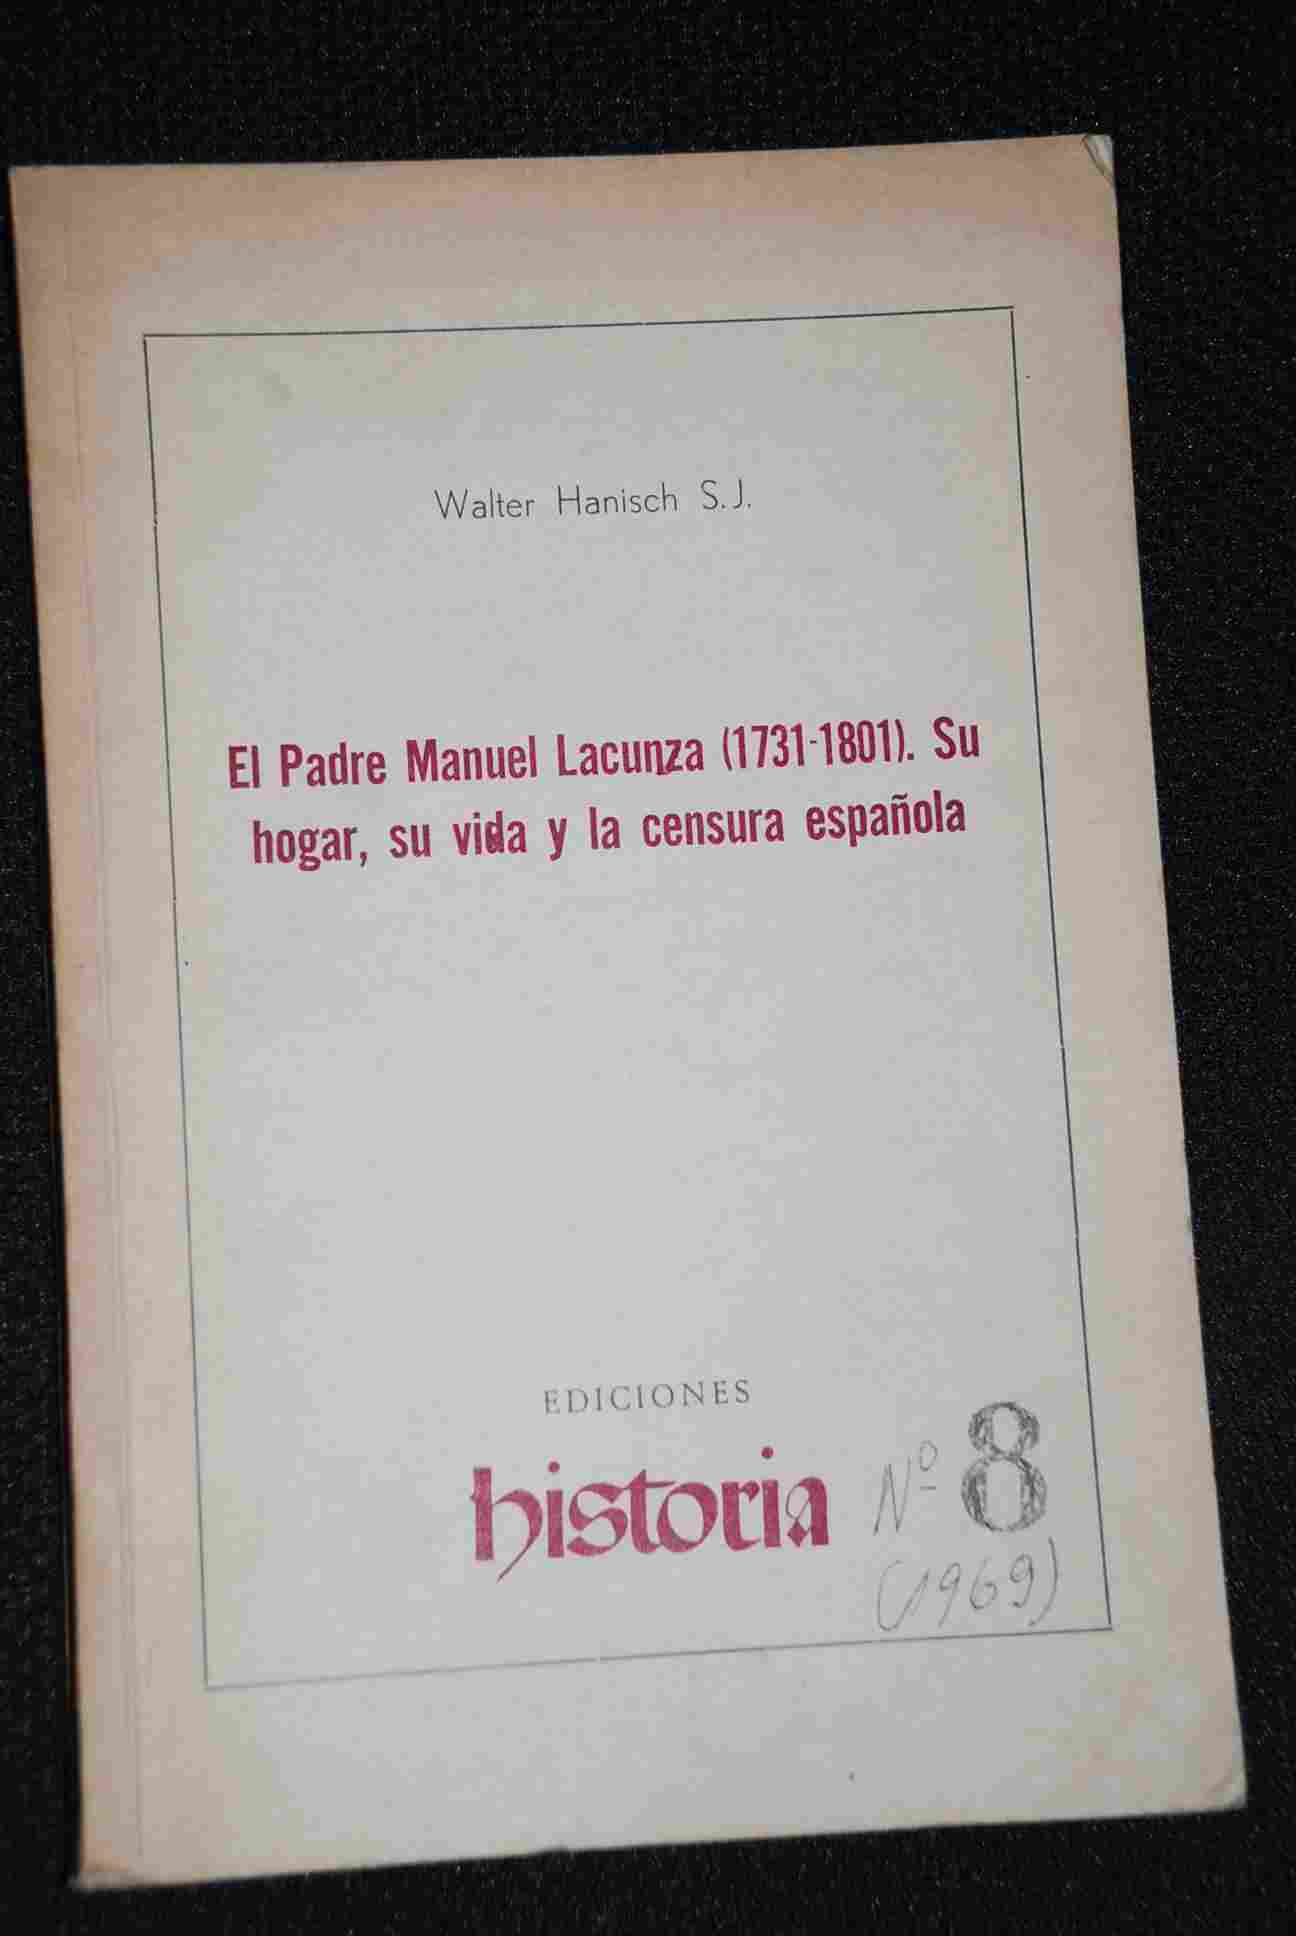 Walter Hanisch - El Padre Manuel Lacunza  1731 - 1801. Su hogar, su vida y la censura española